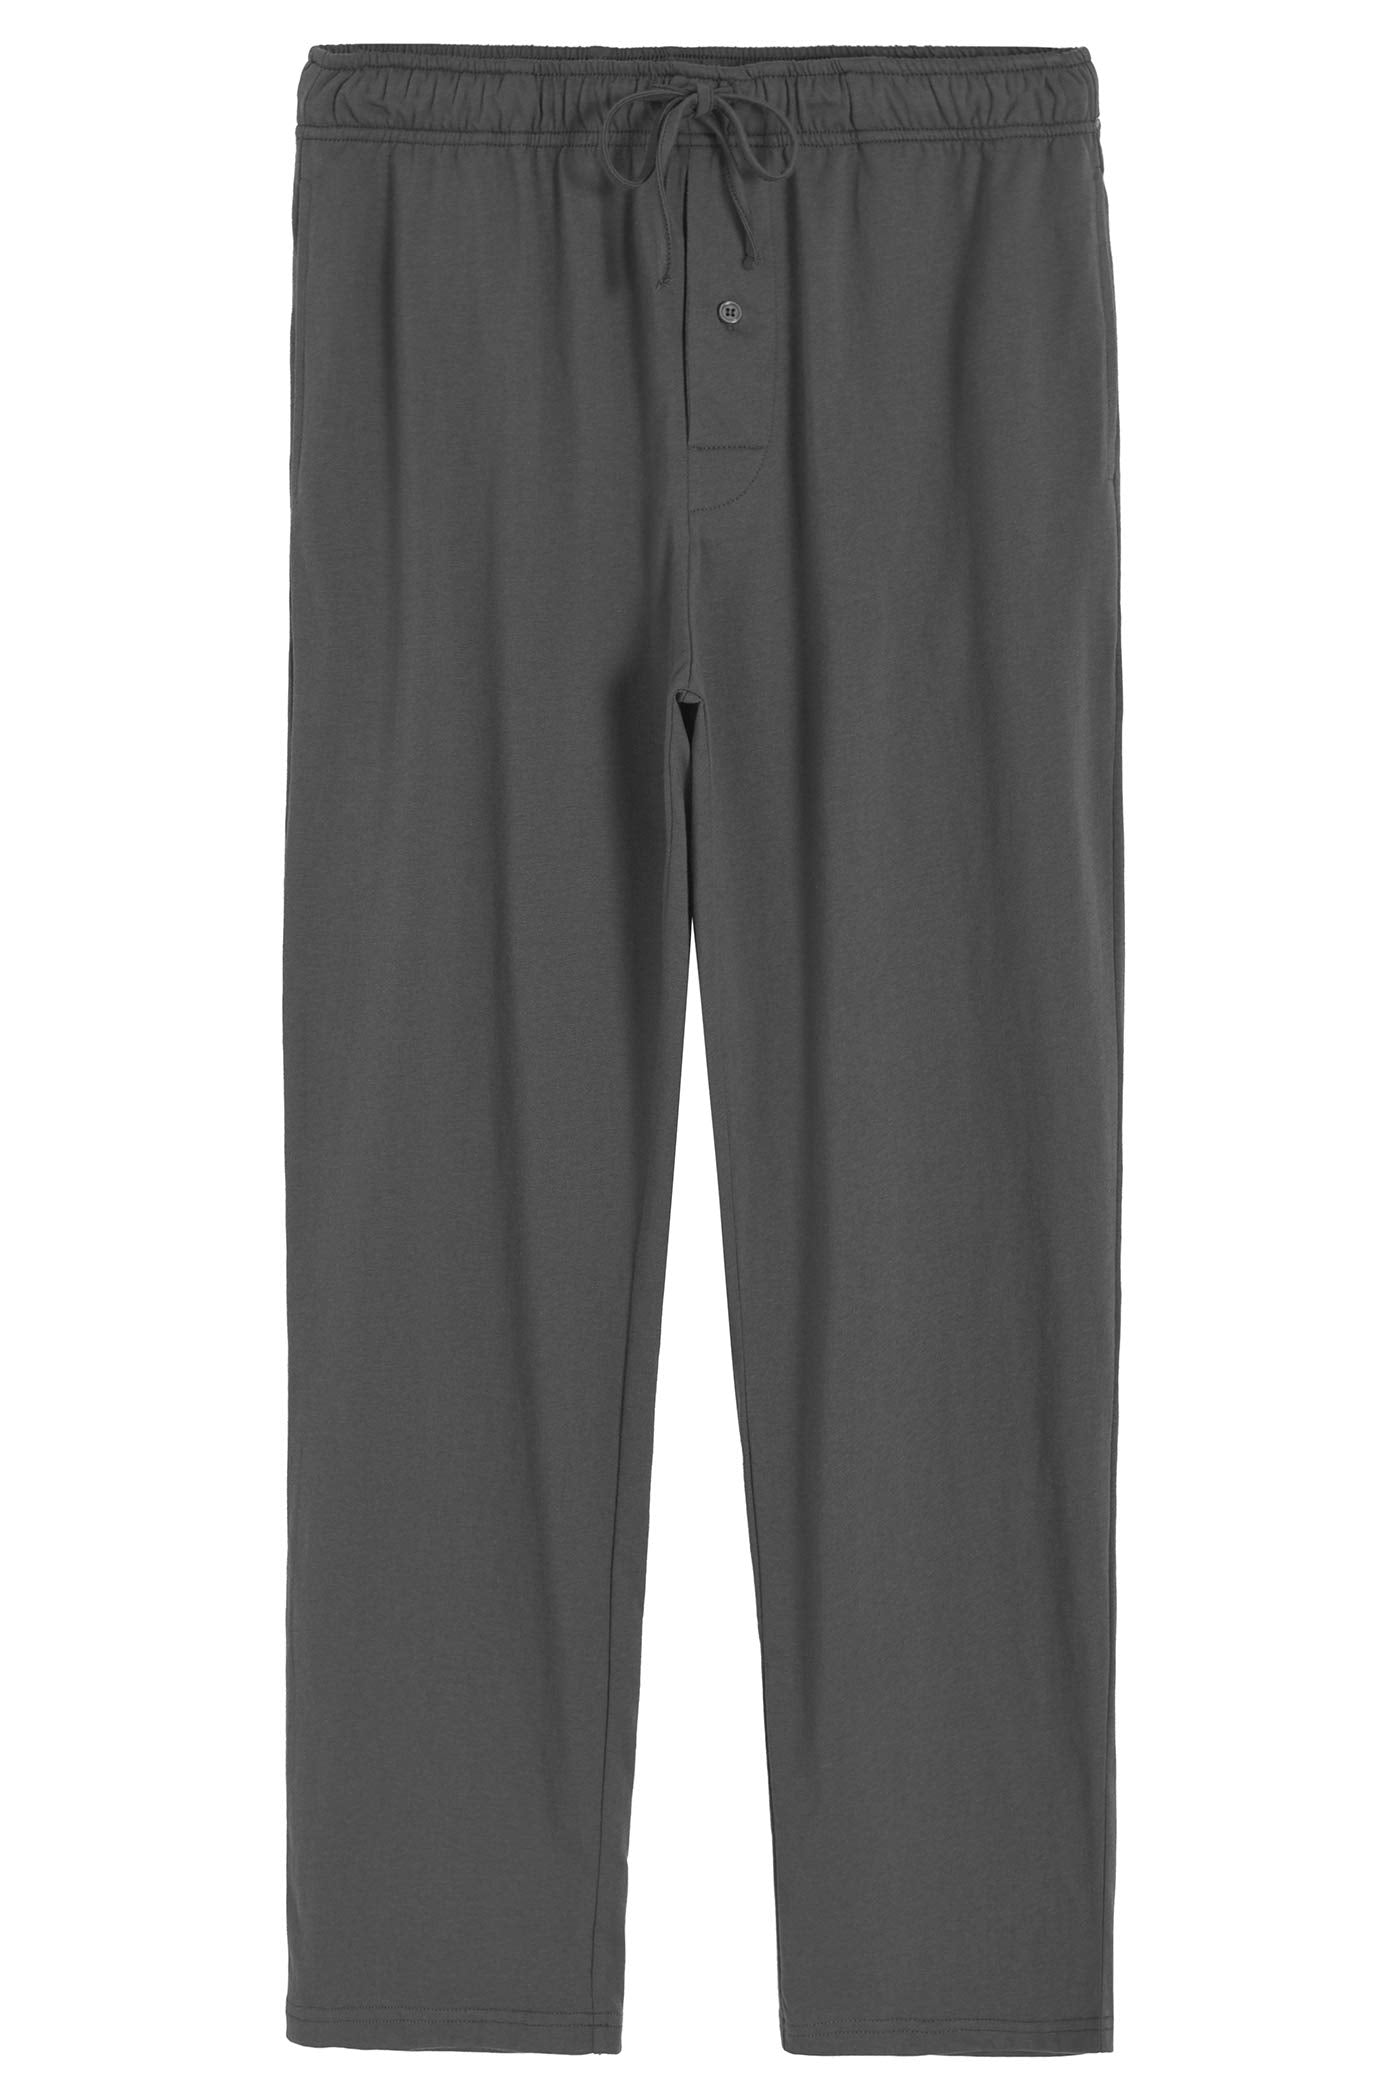 Latuza, Shorts, Latuza Mens Gray Pajama Bottom Shorts Small New